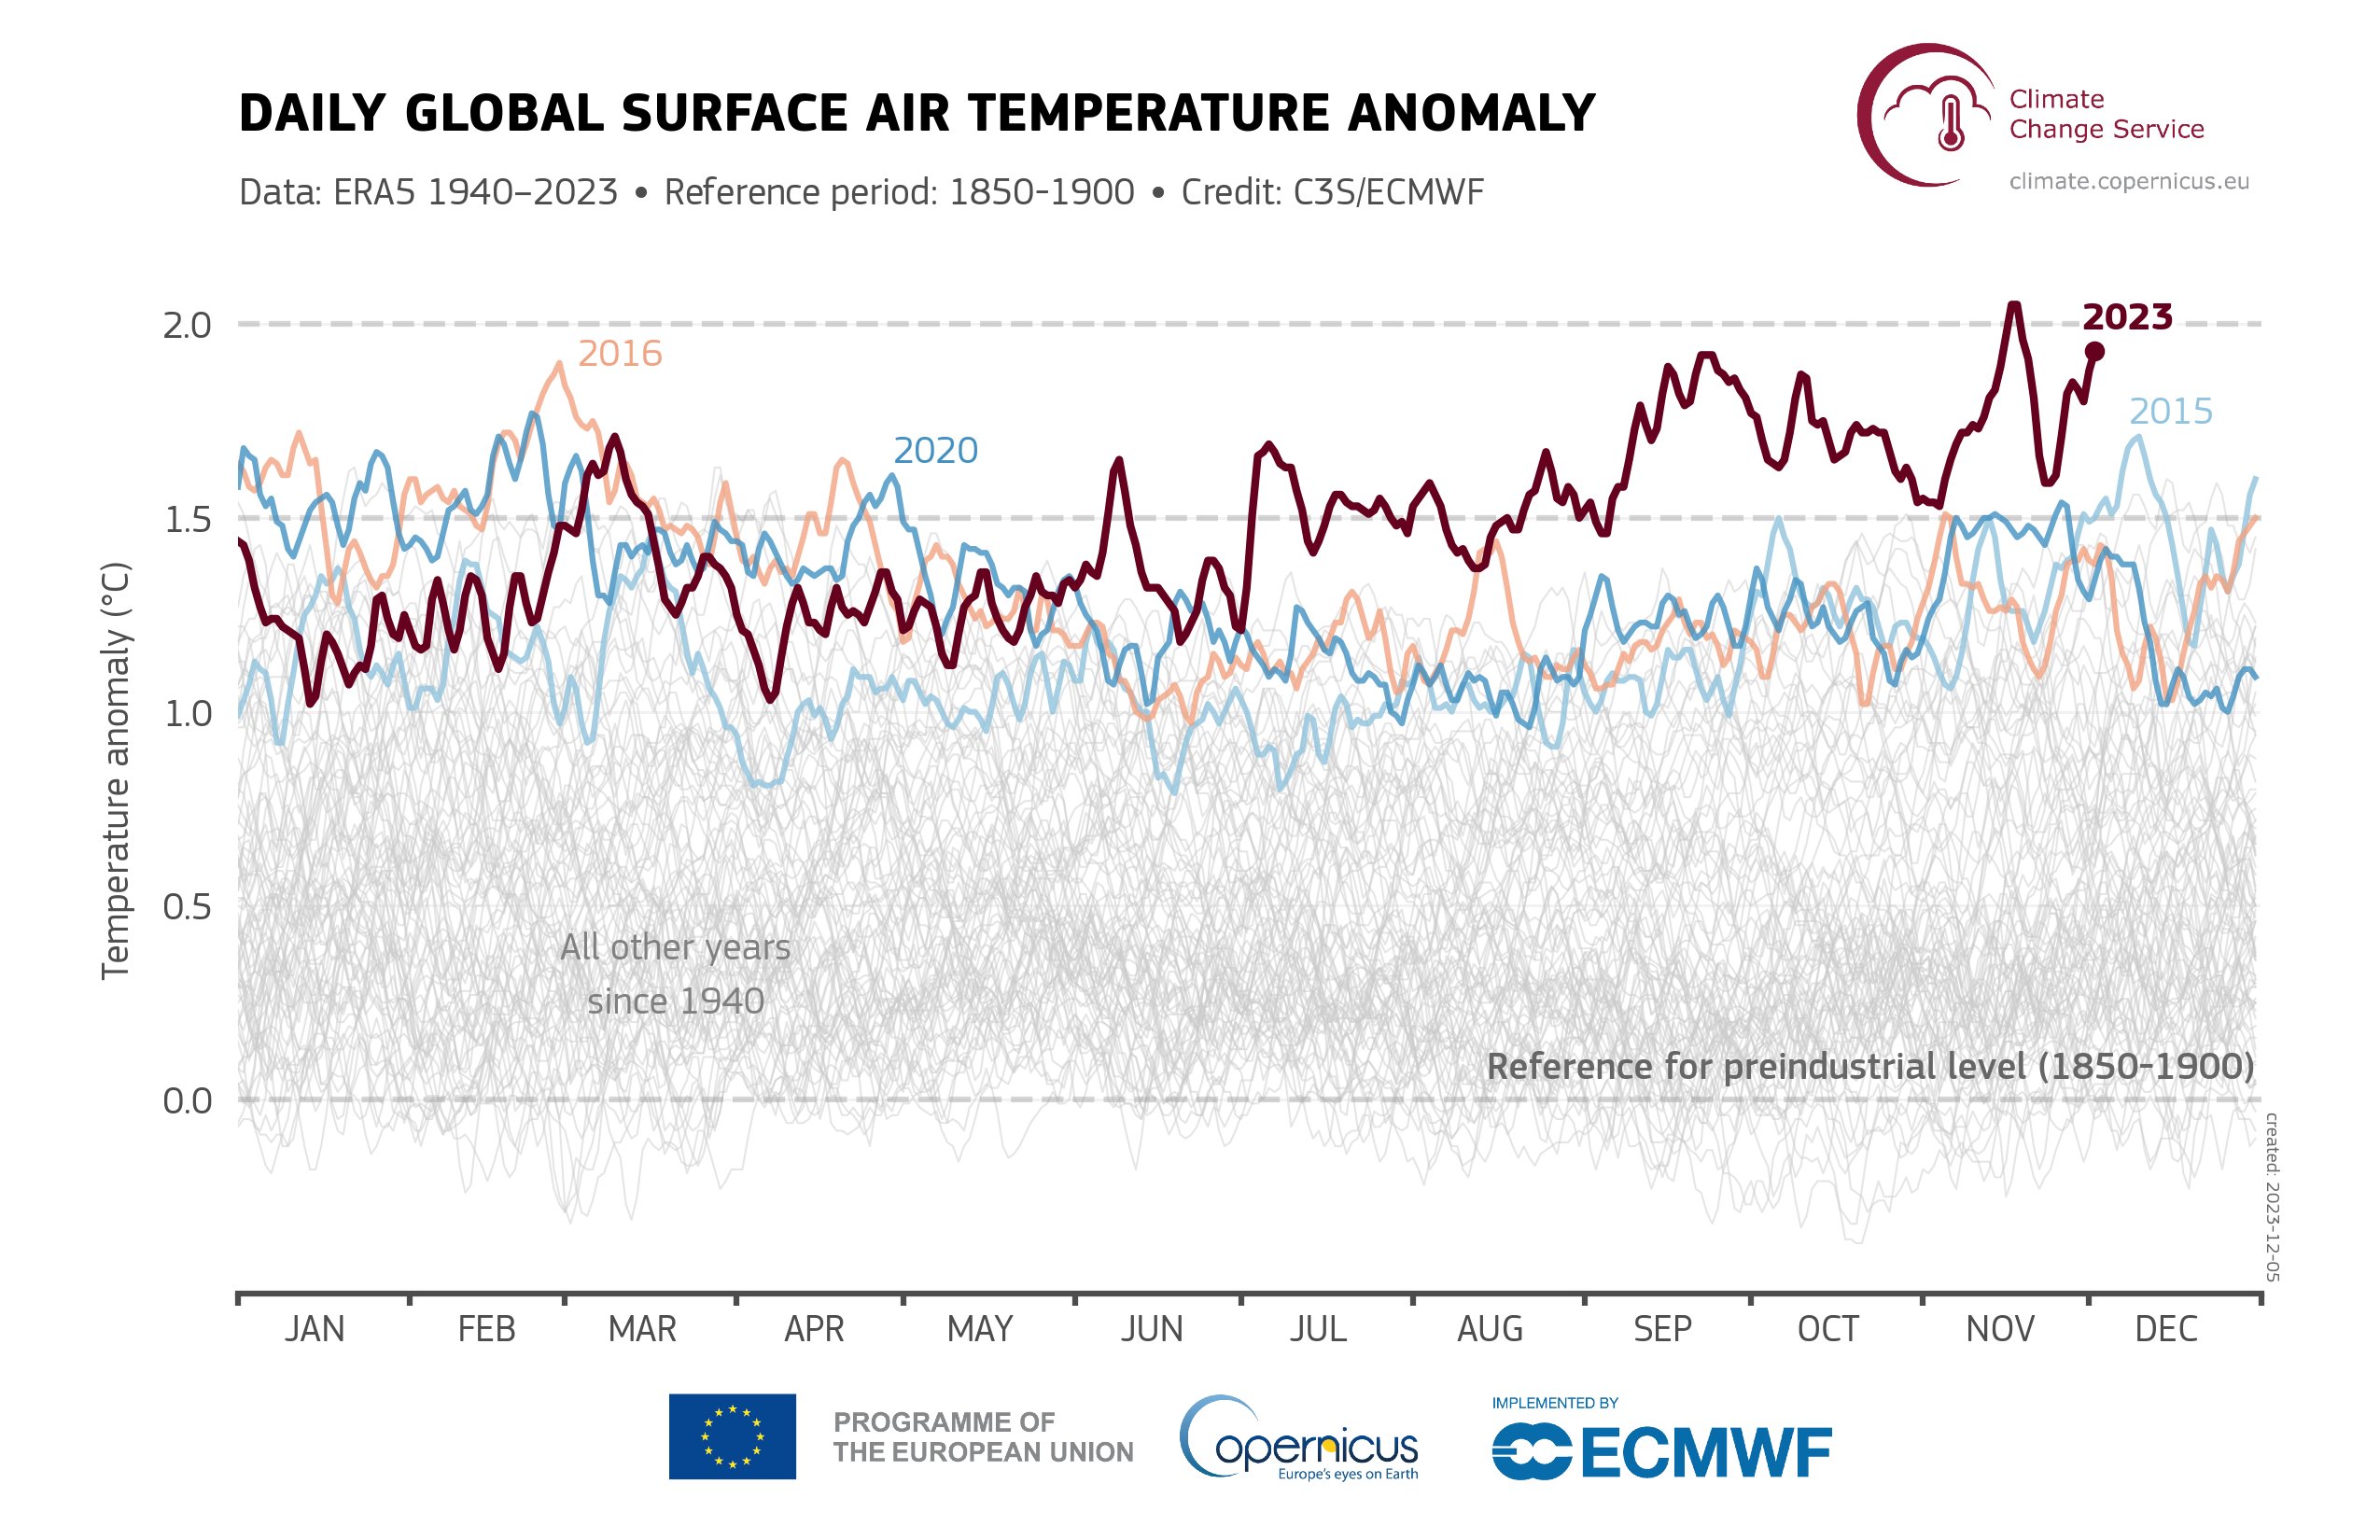  인류가 본격적으로 화석연료를 태우기 시작한 산업화 이전(1850-1900) 지구 평균기온을 기준으로, 연도별  차이를 나타낸 그래프. 2023년  기온 차가 다른 연도보다 상위에 있음은 물론, 하반기 이후에는 ‘1.5도’를 훌쩍 넘는 것을 볼 수 있다. 출처: 유럽연합 코페르니쿠스 기후변화서비스 홈페이지